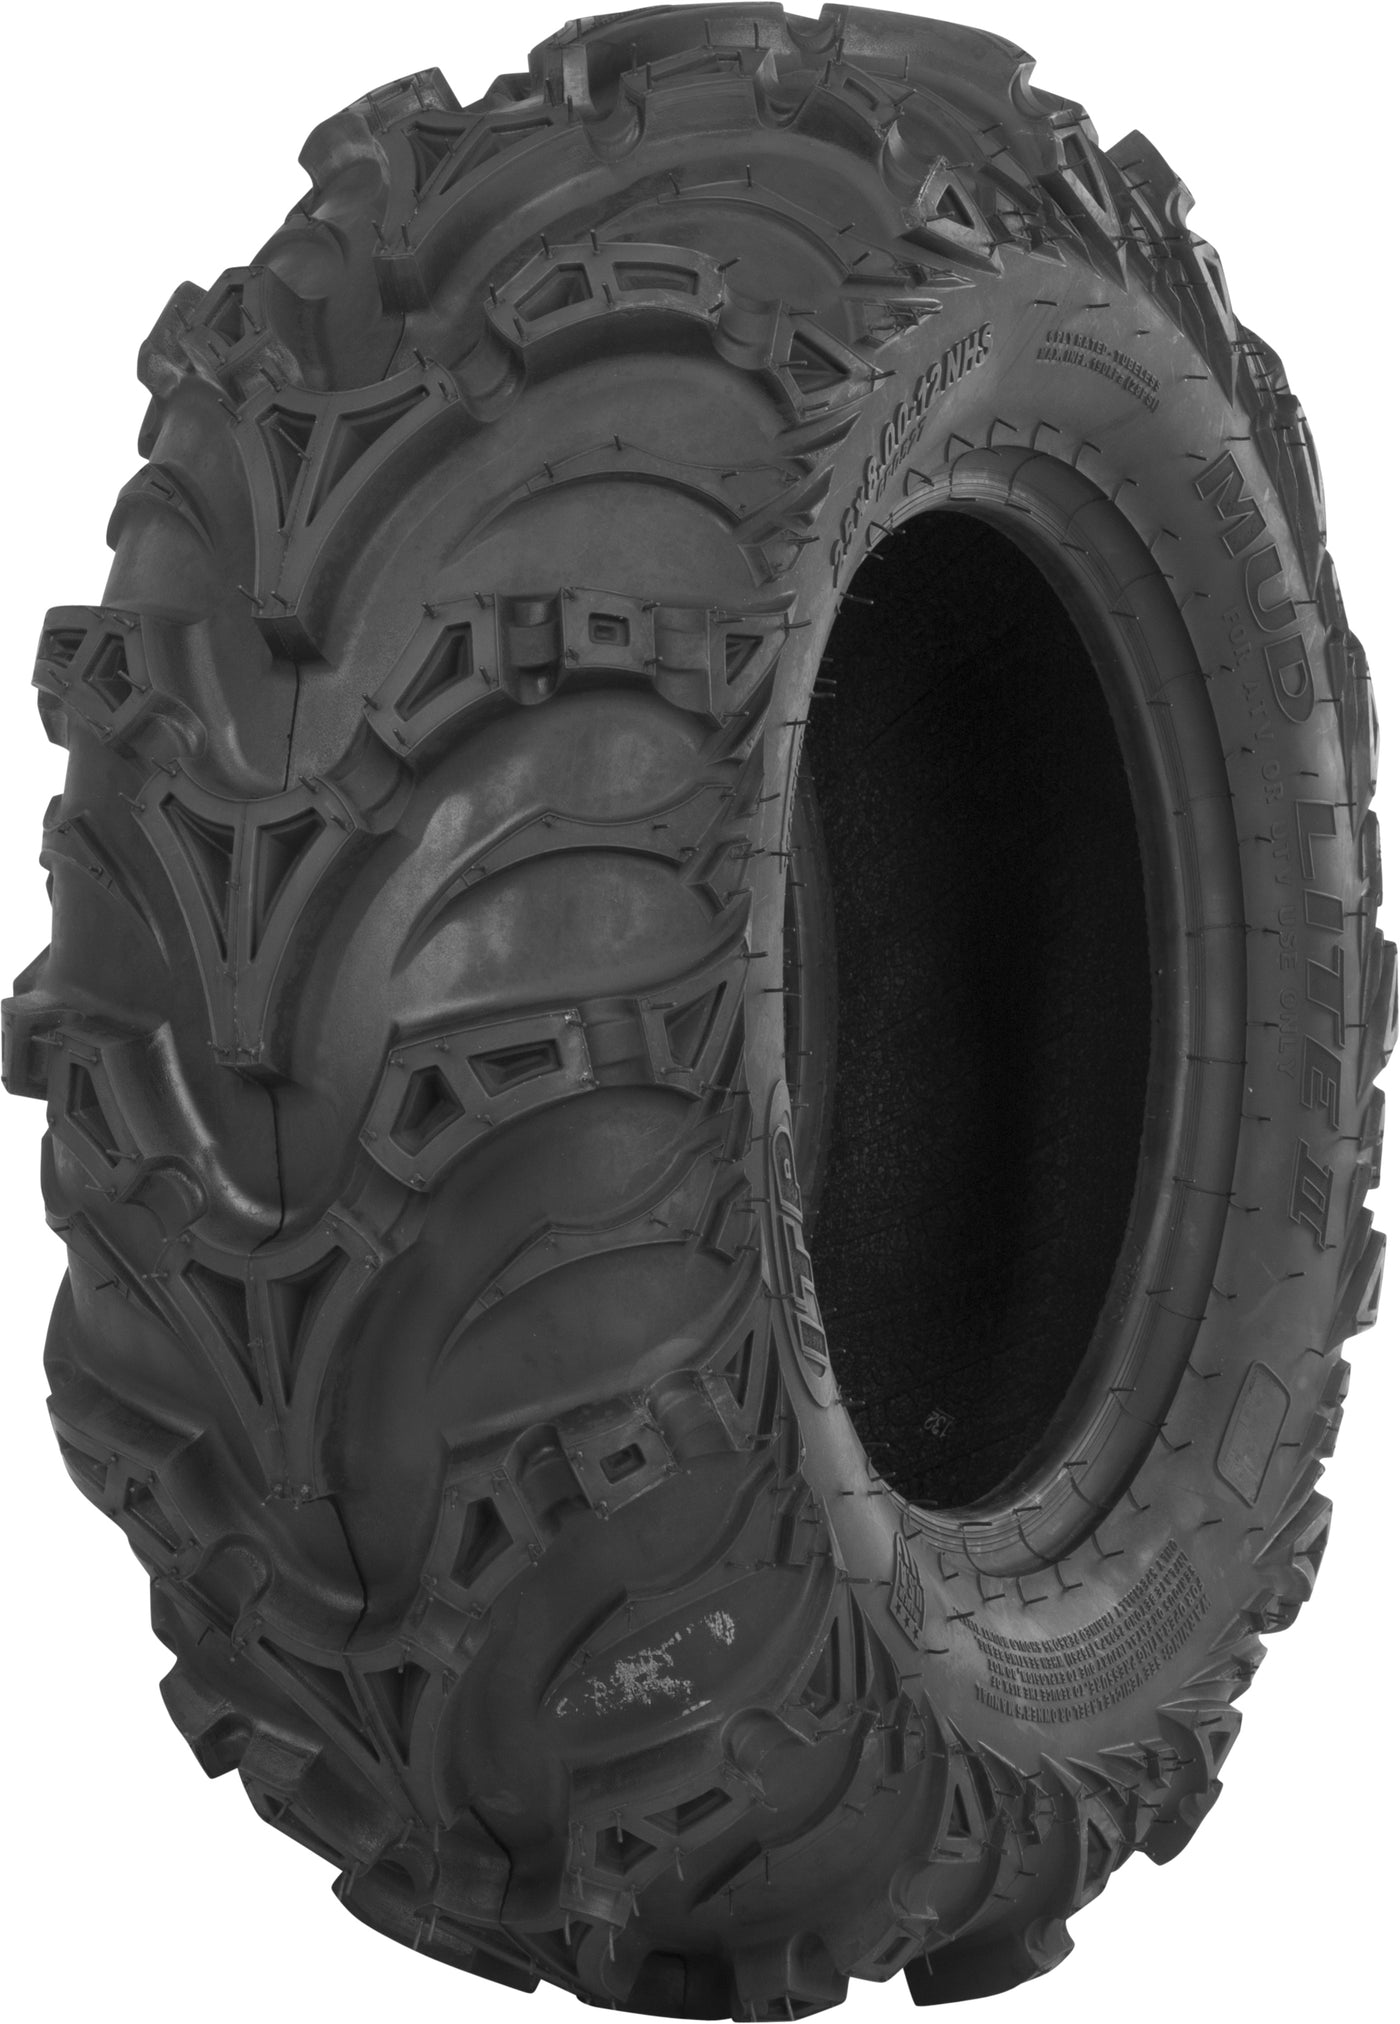 Tire Mud Lite Ii Front 30x9-14 Lr-1360lbs Bias